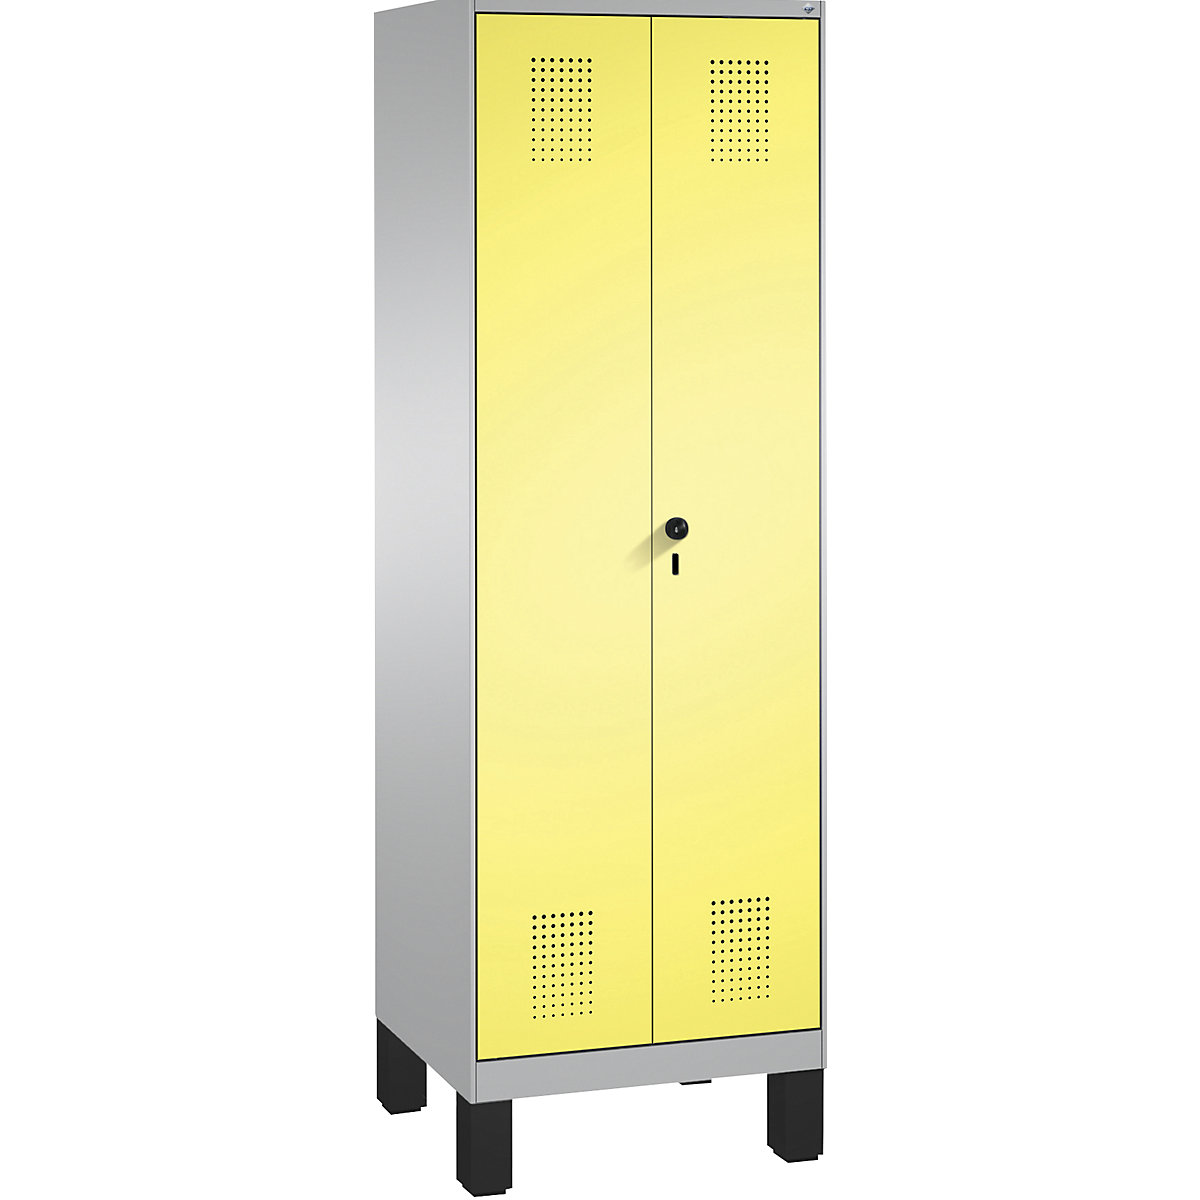 EVOLO tárolószekrény, egymásra csukódó ajtók, lábakkal – C+P, 1 fülke, szélesség 600 mm, 4 polccal, fehéralumínium / kénsárga-14